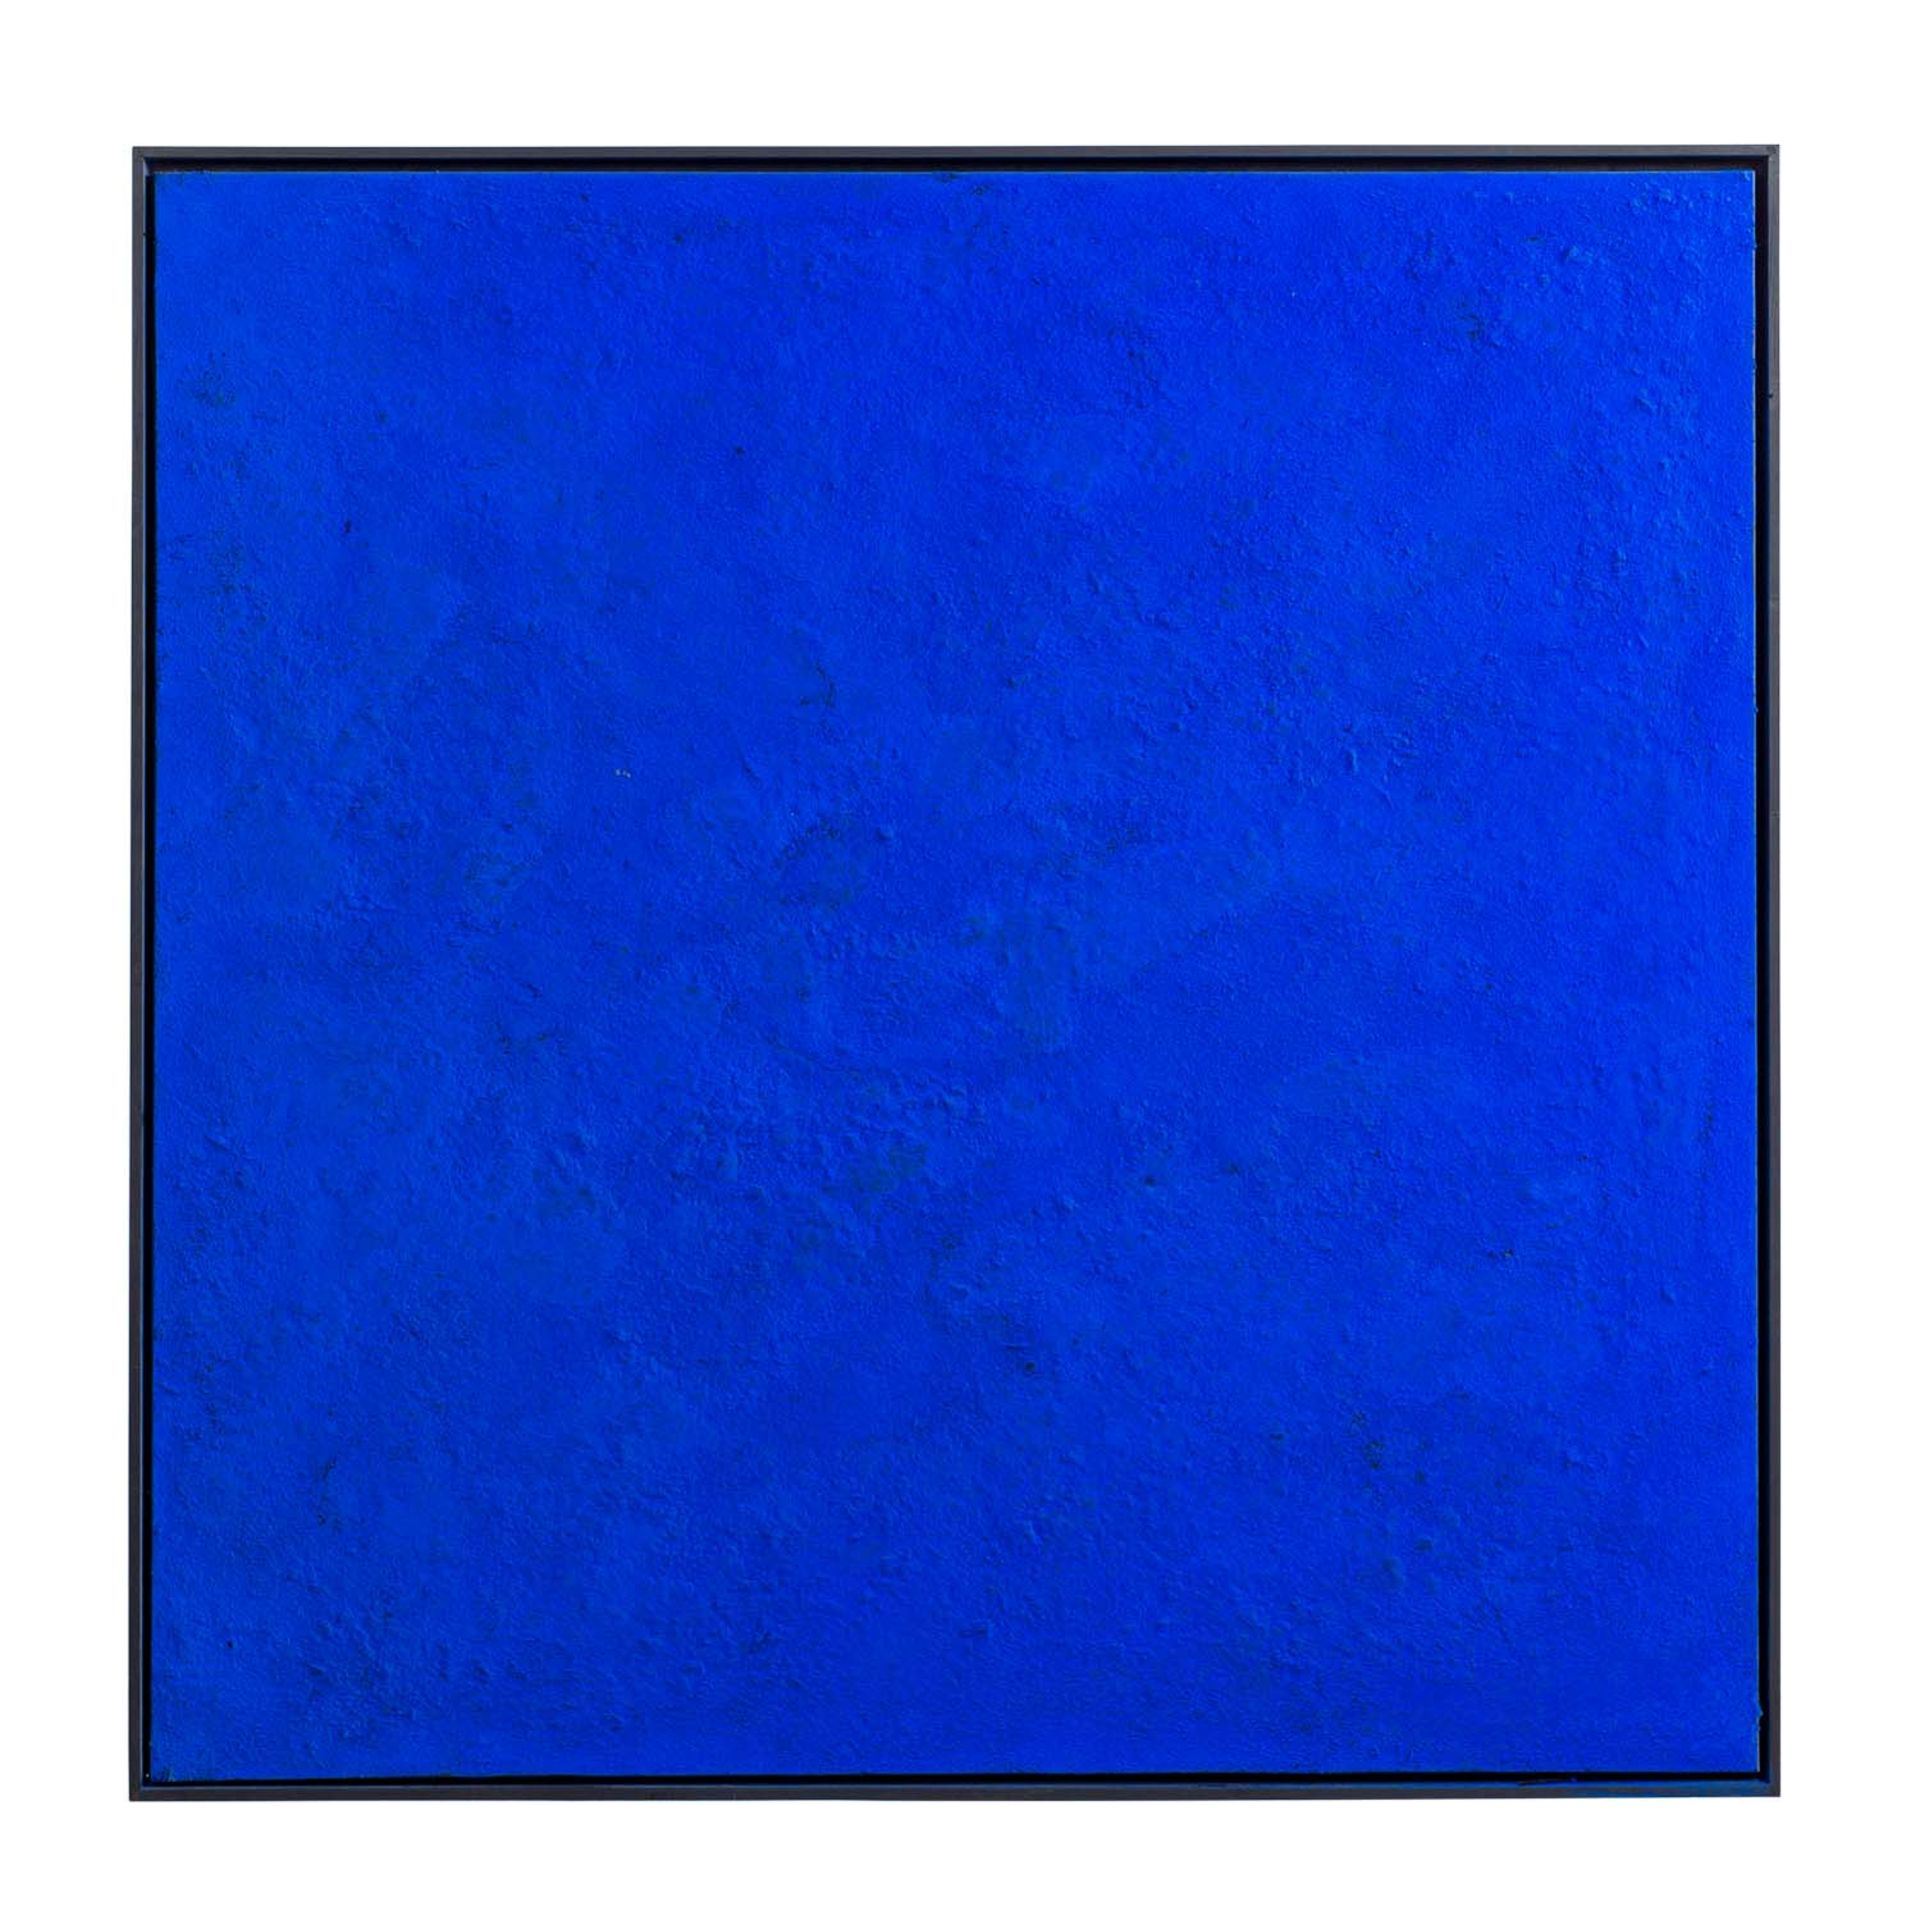 SCHLESINGER, HOLGER (Künstler 20./21. Jh), "Monochrom blau",blaue Pigmentfarbe über Ton/Leinwand,